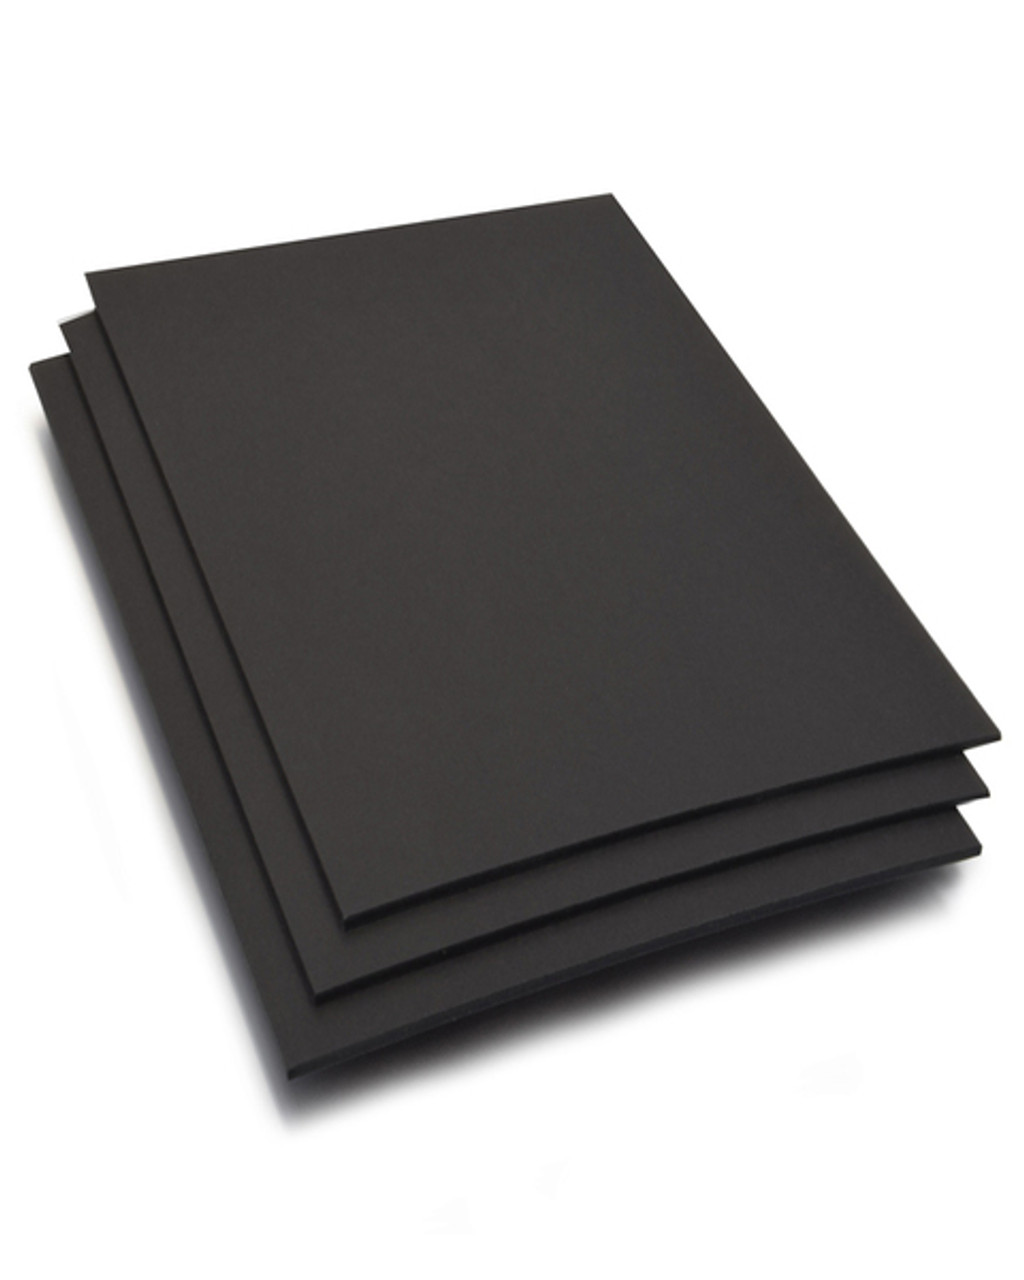 30 Packs 8 X 10 X 3/16 Inch Black Foam Board, Foam Core Backing